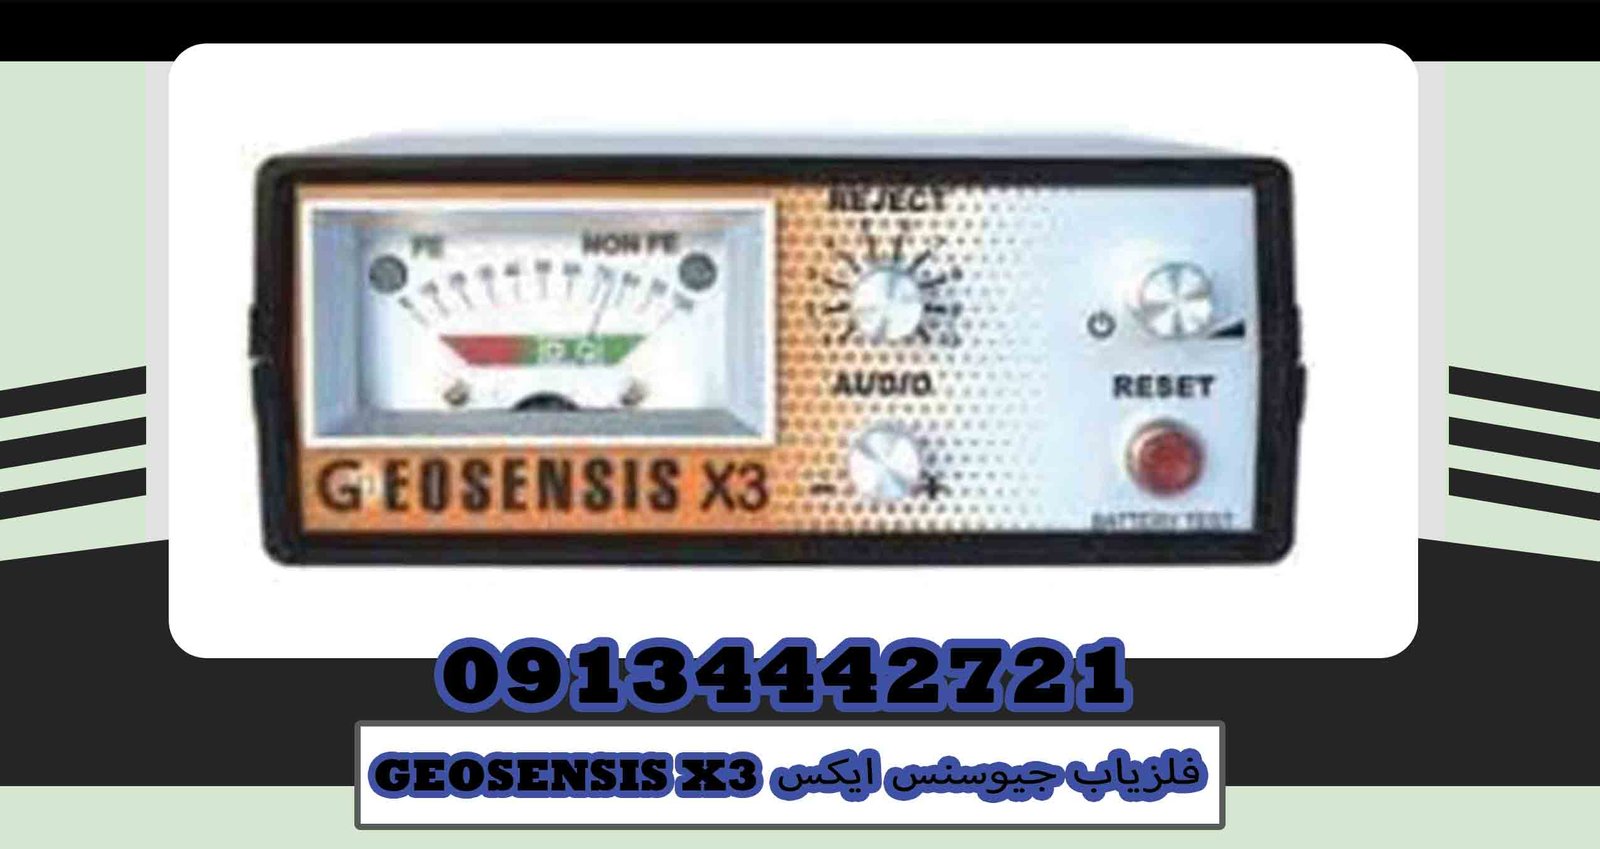 فلزیاب جیوسنس ایکس GEOSENSIS X3|گوهرباستان|۰۹۱۳۴۴۴۲۷۲۱